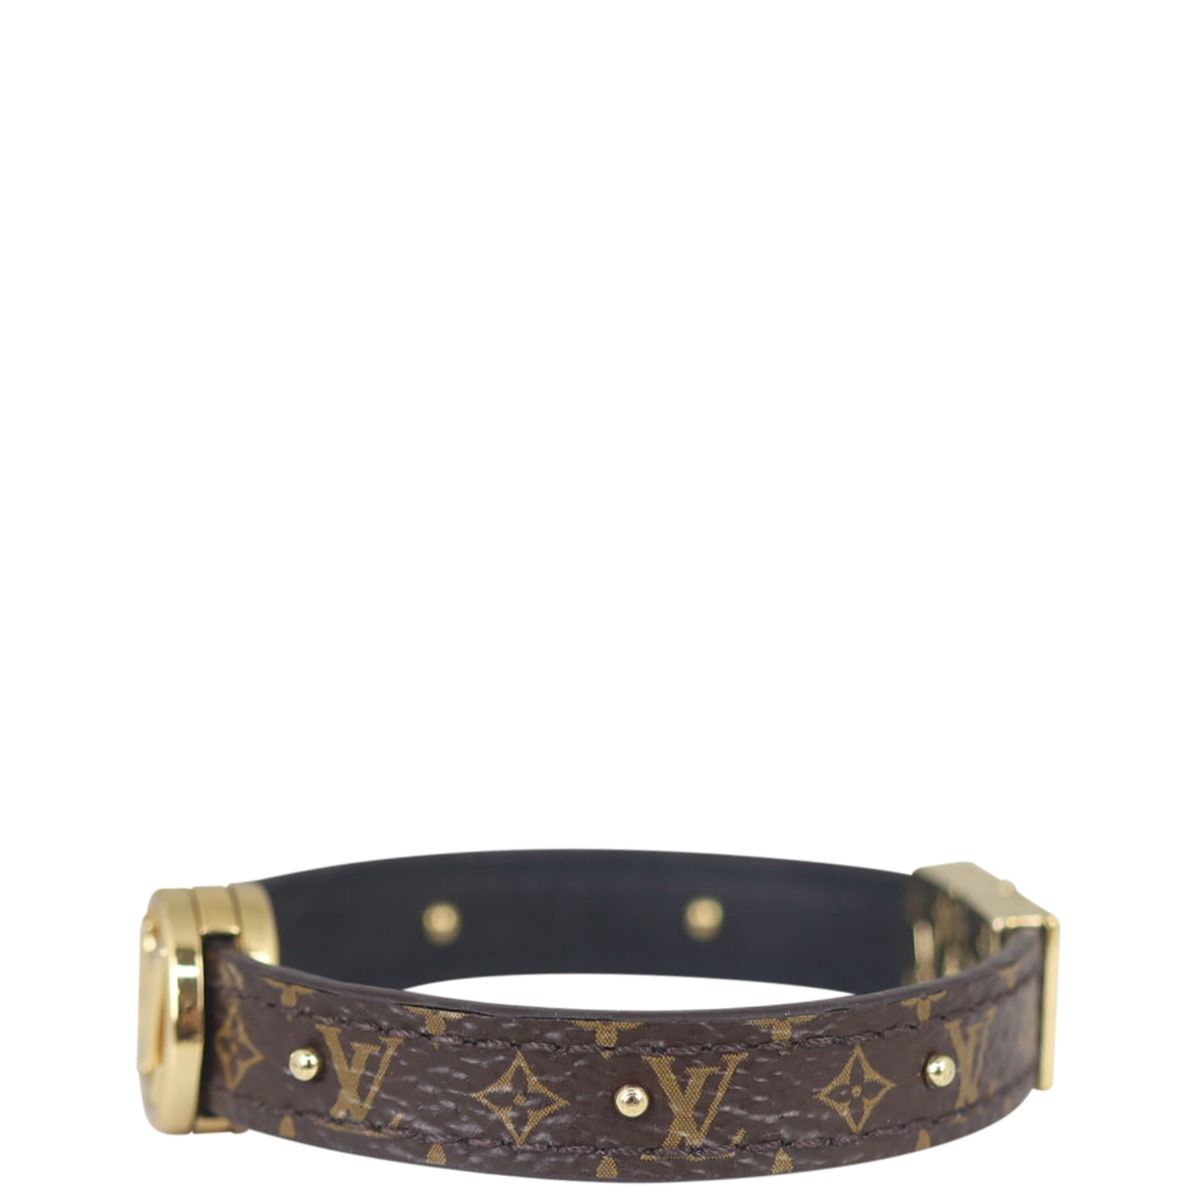 Louis Vuitton LV Trunk Reversible Leather Goods Bracelet